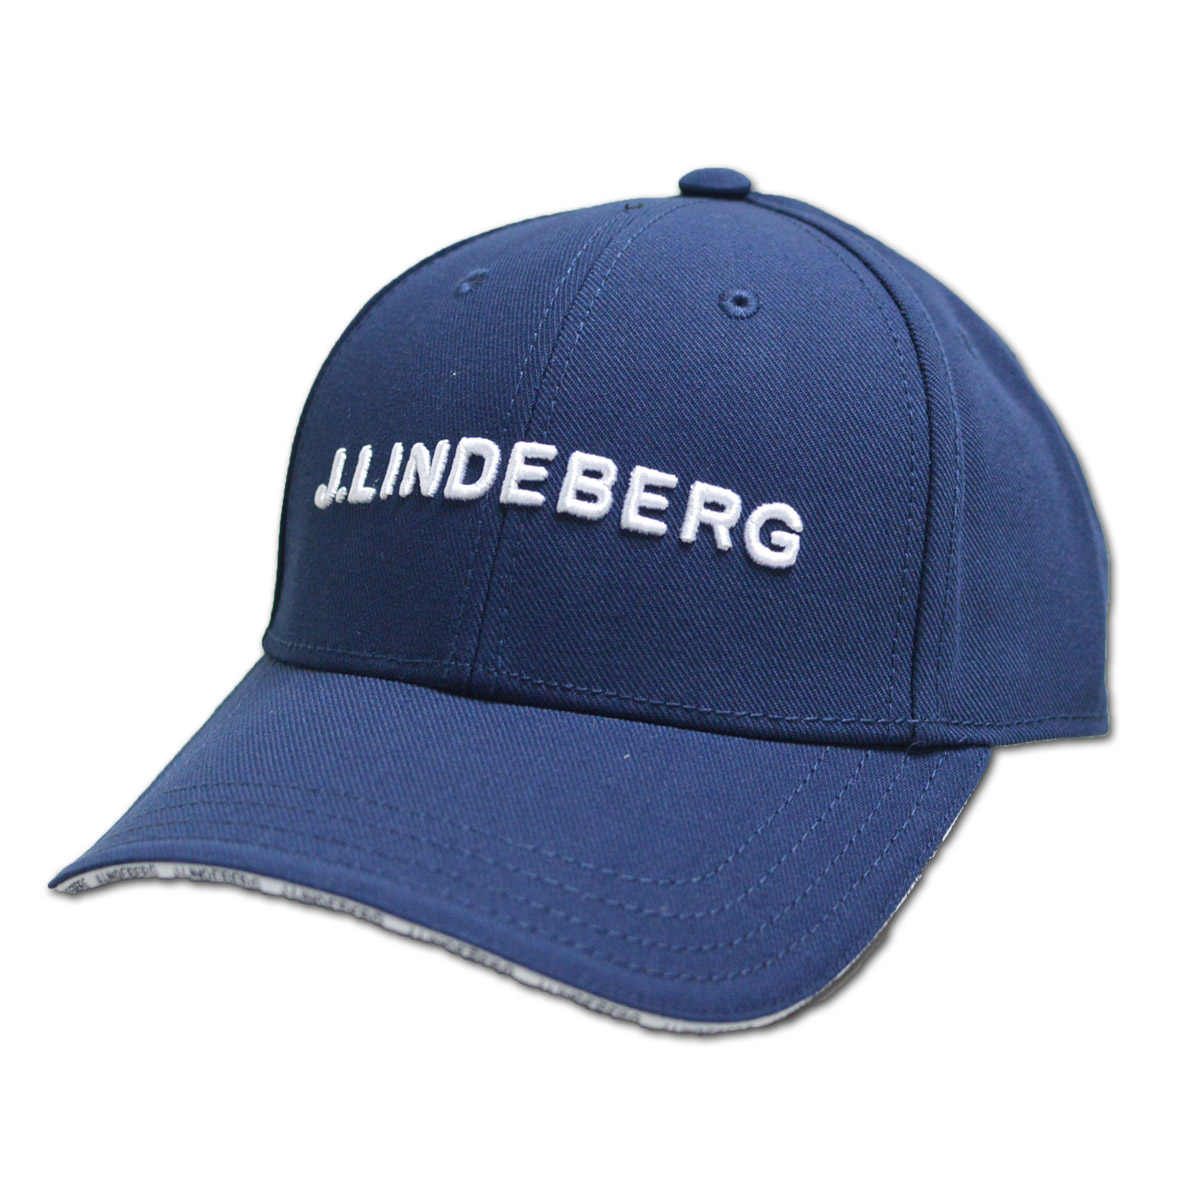 J.リンドバーグ キャップ帽子 メンズ 黒 白  グレー 紺 073-51333